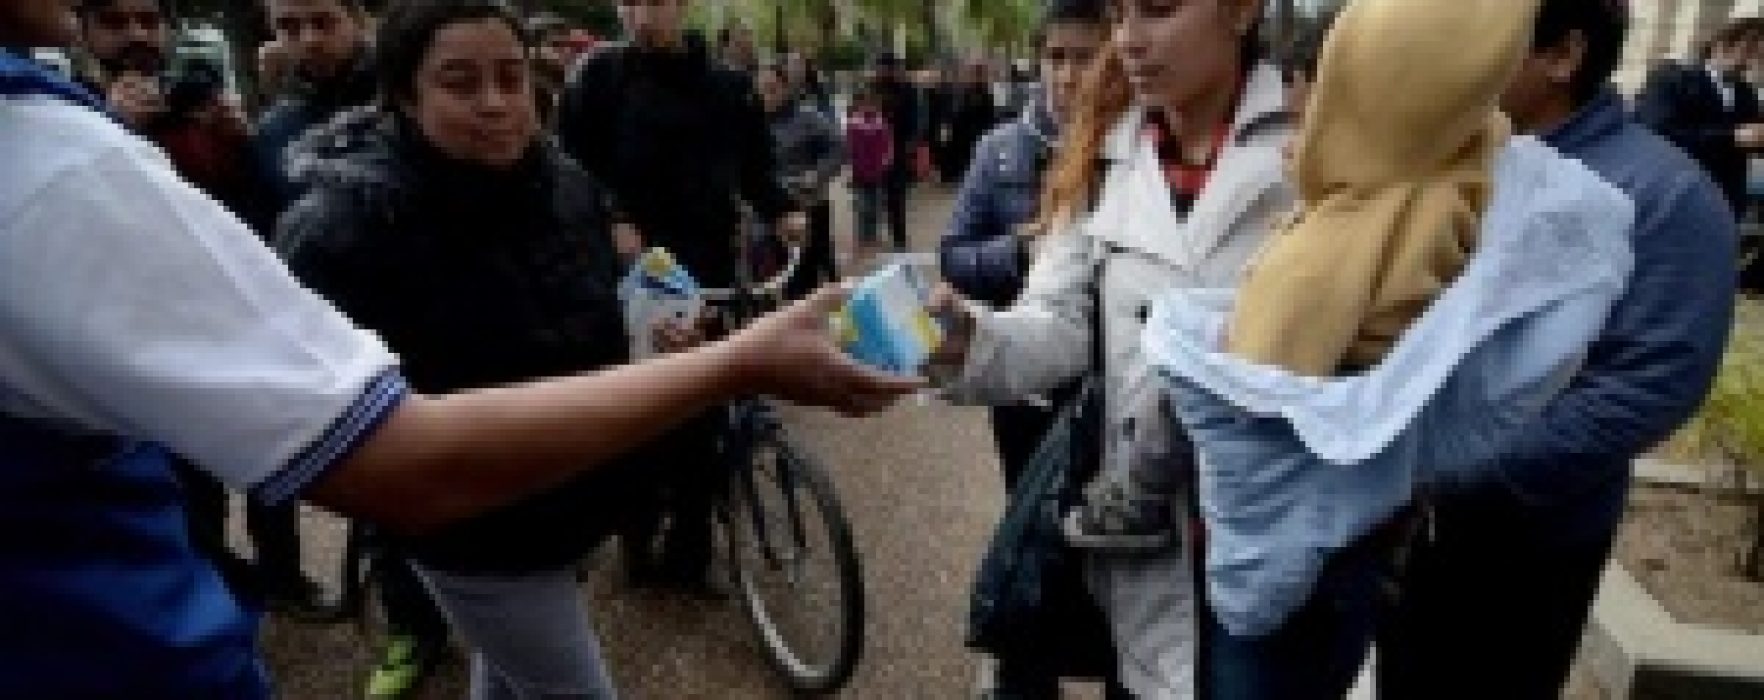 Santa Fe: regalaron leche en una protesta por despidos